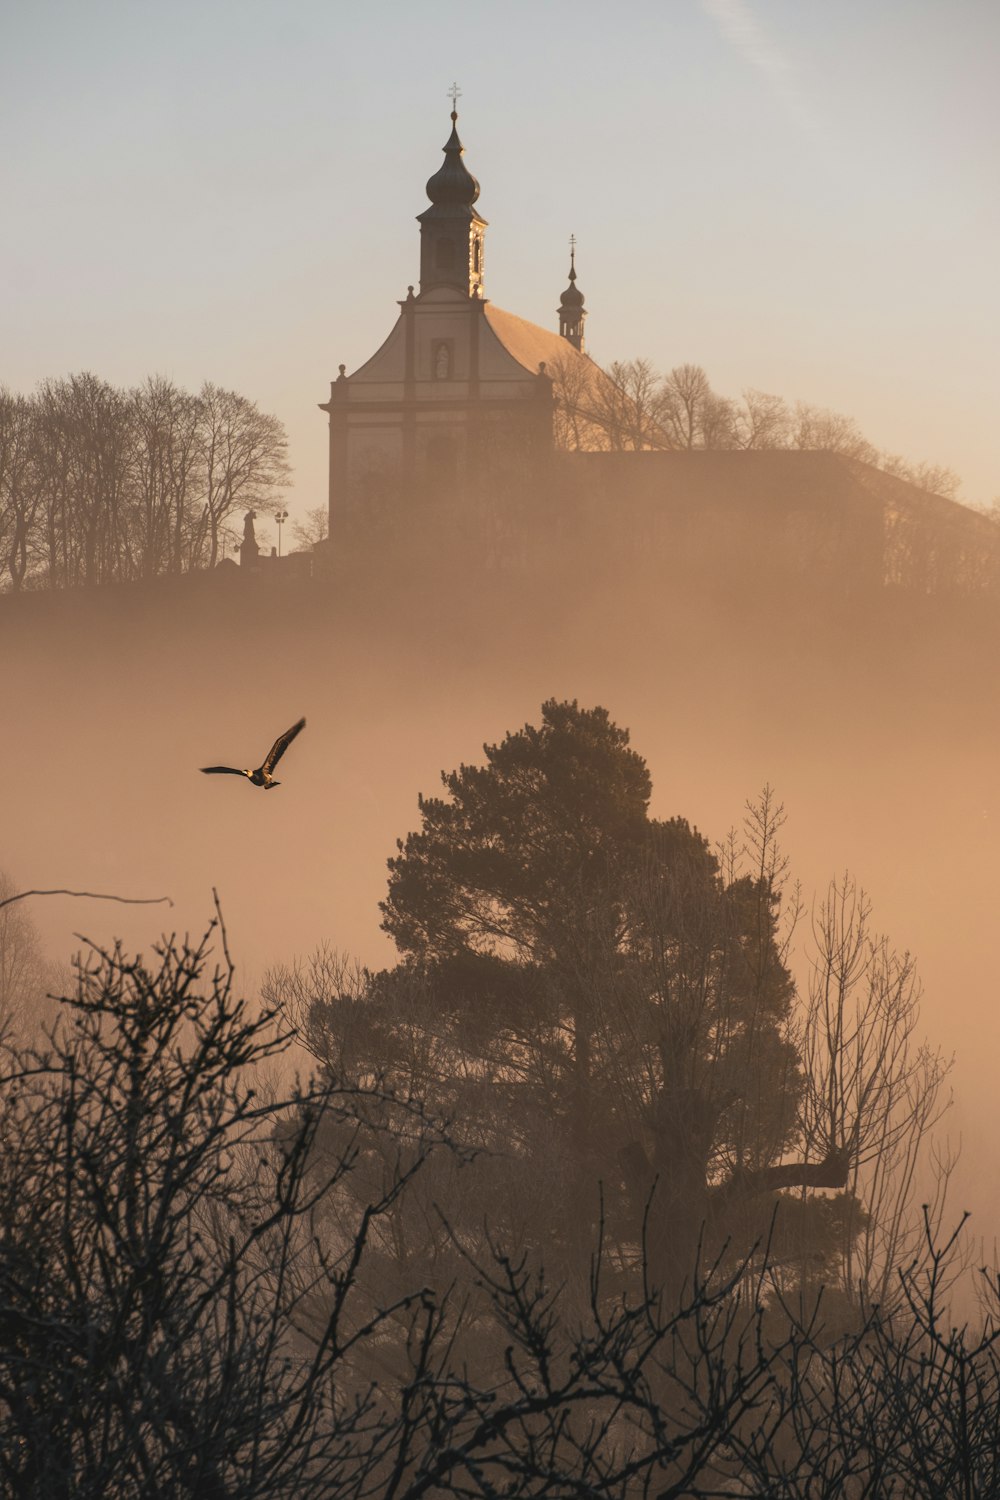 Un oiseau volant devant une église sur une colline